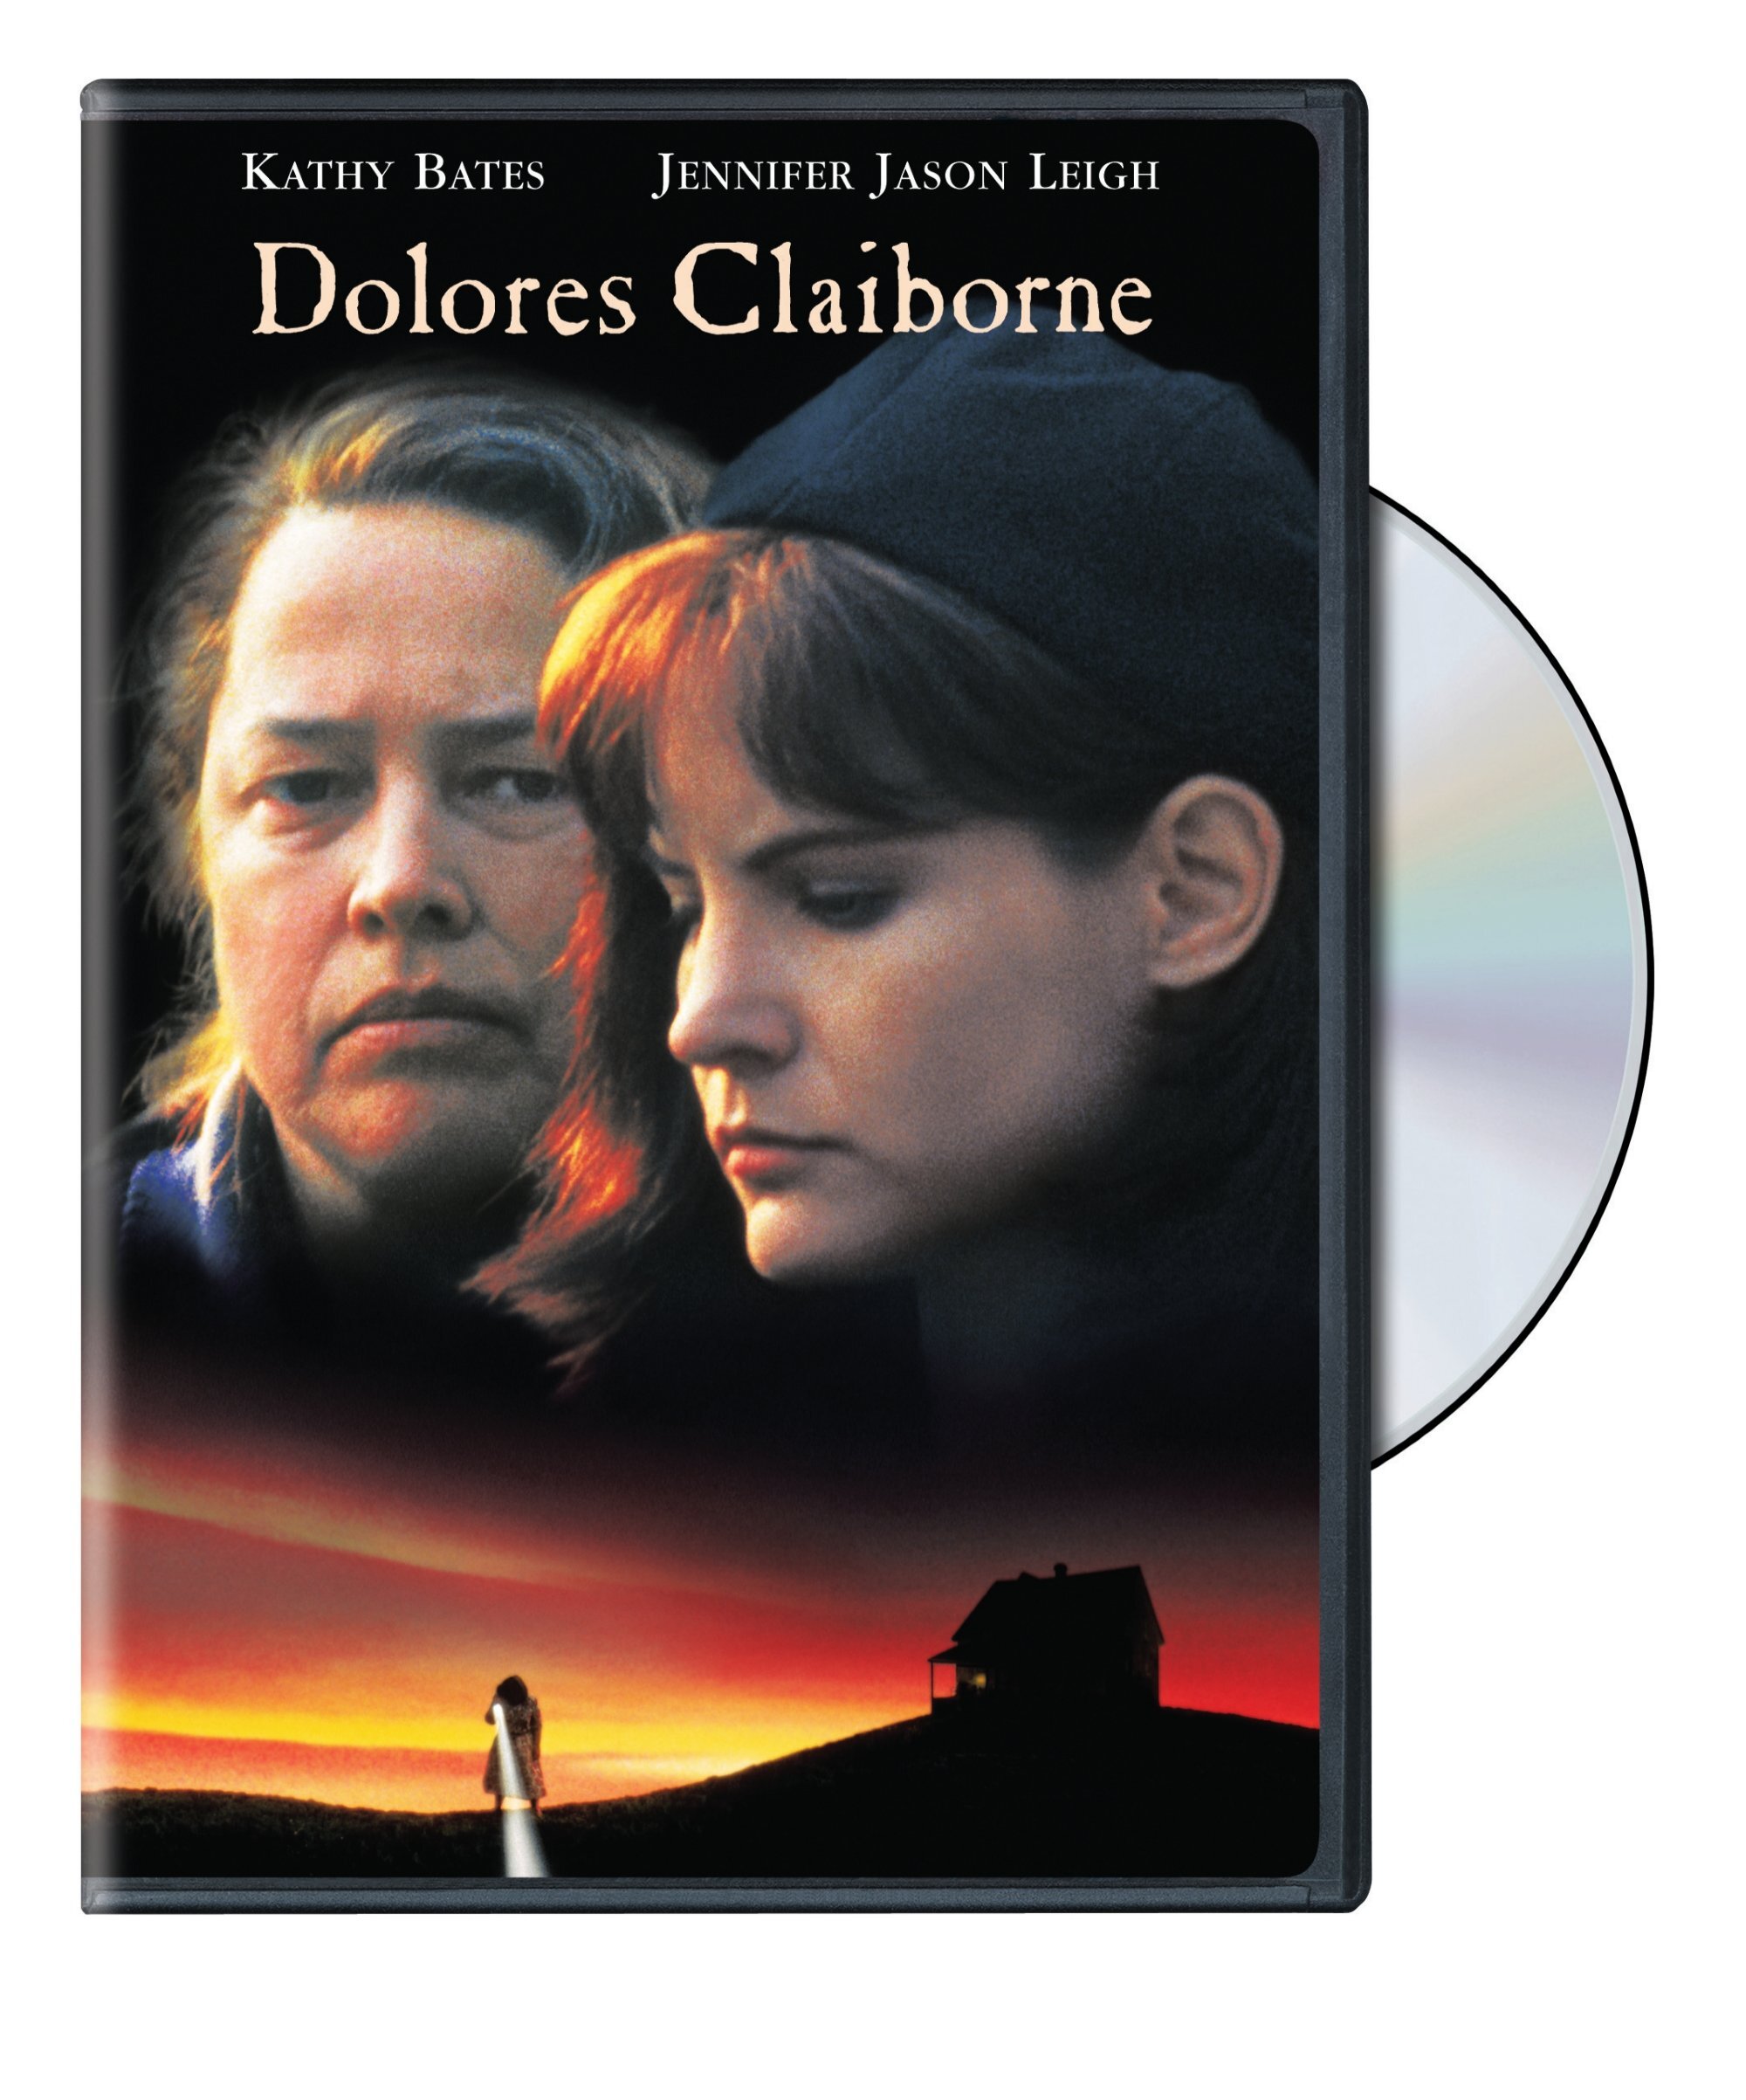 Dolores Claiborne - DVD [ 1995 ]  - Drama Movies On DVD - Movies On GRUV